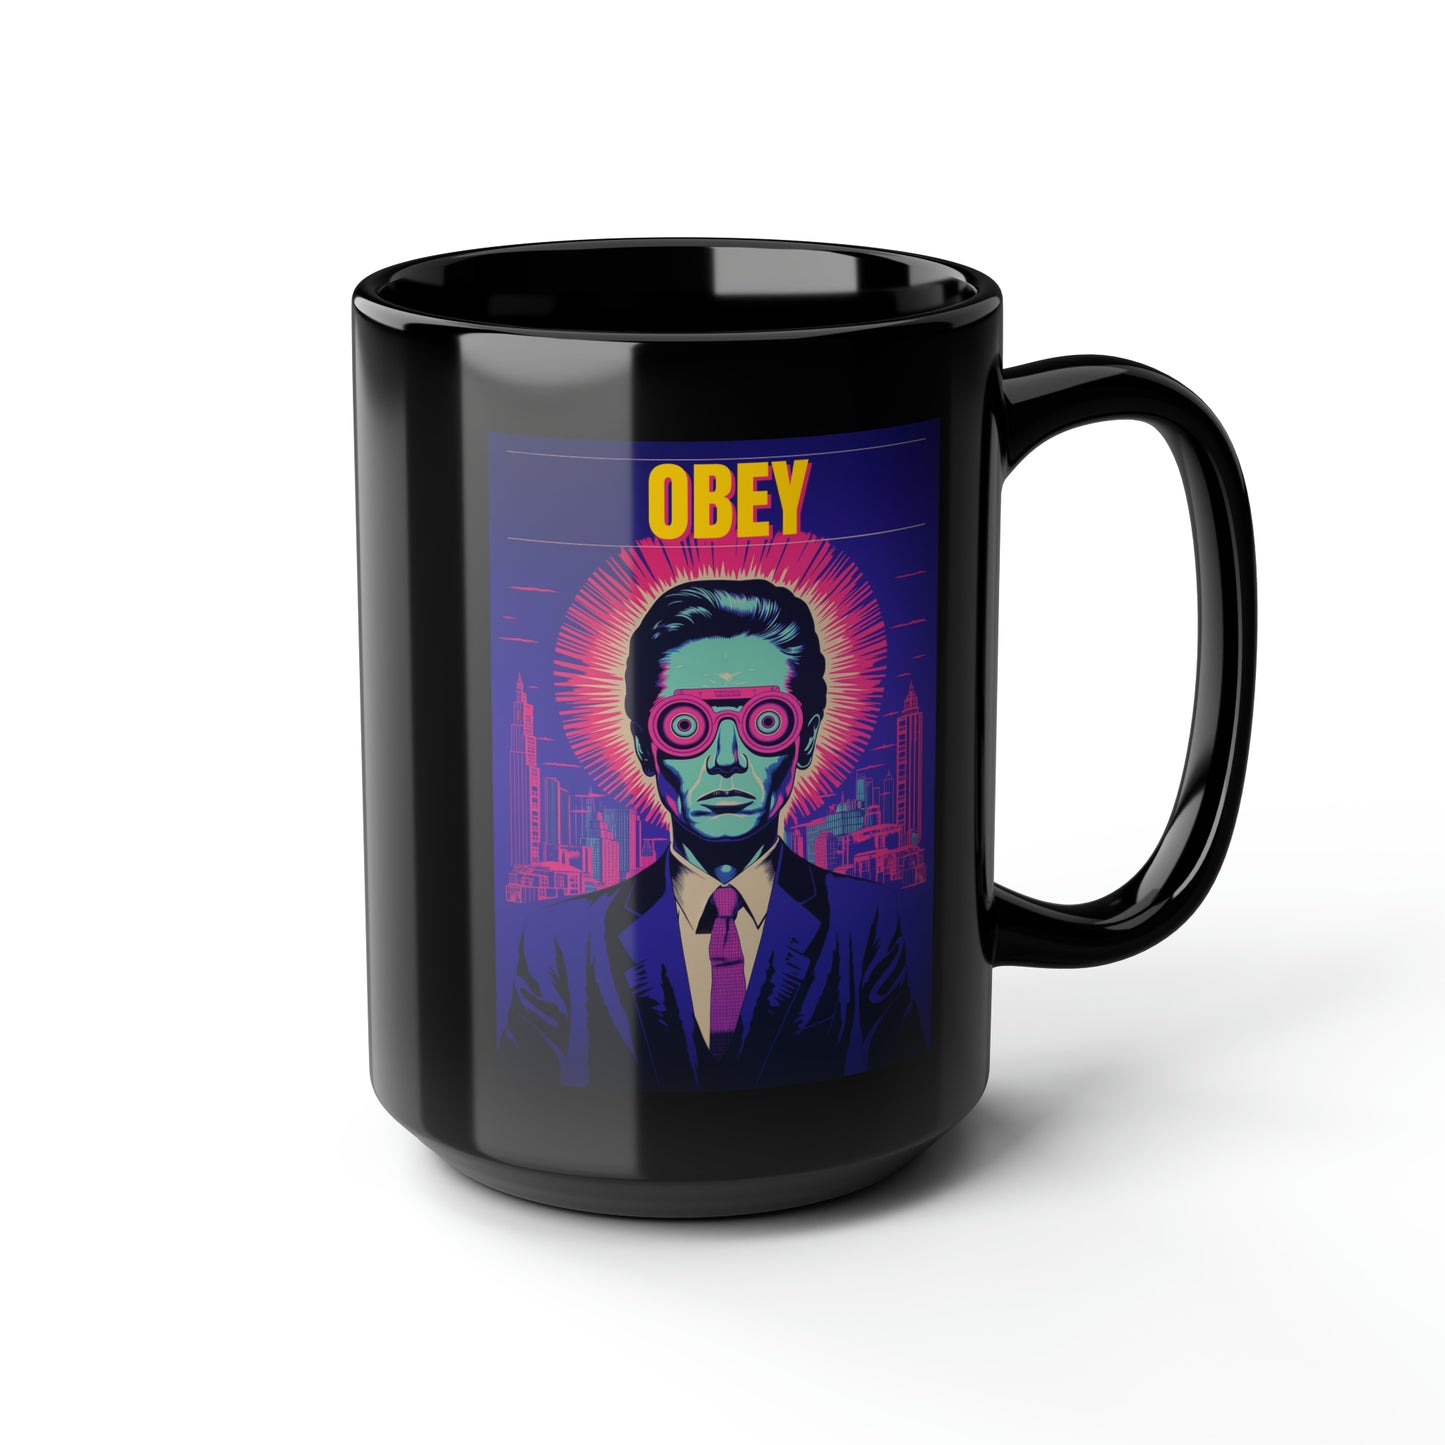 OBEY Black Mug, 15oz